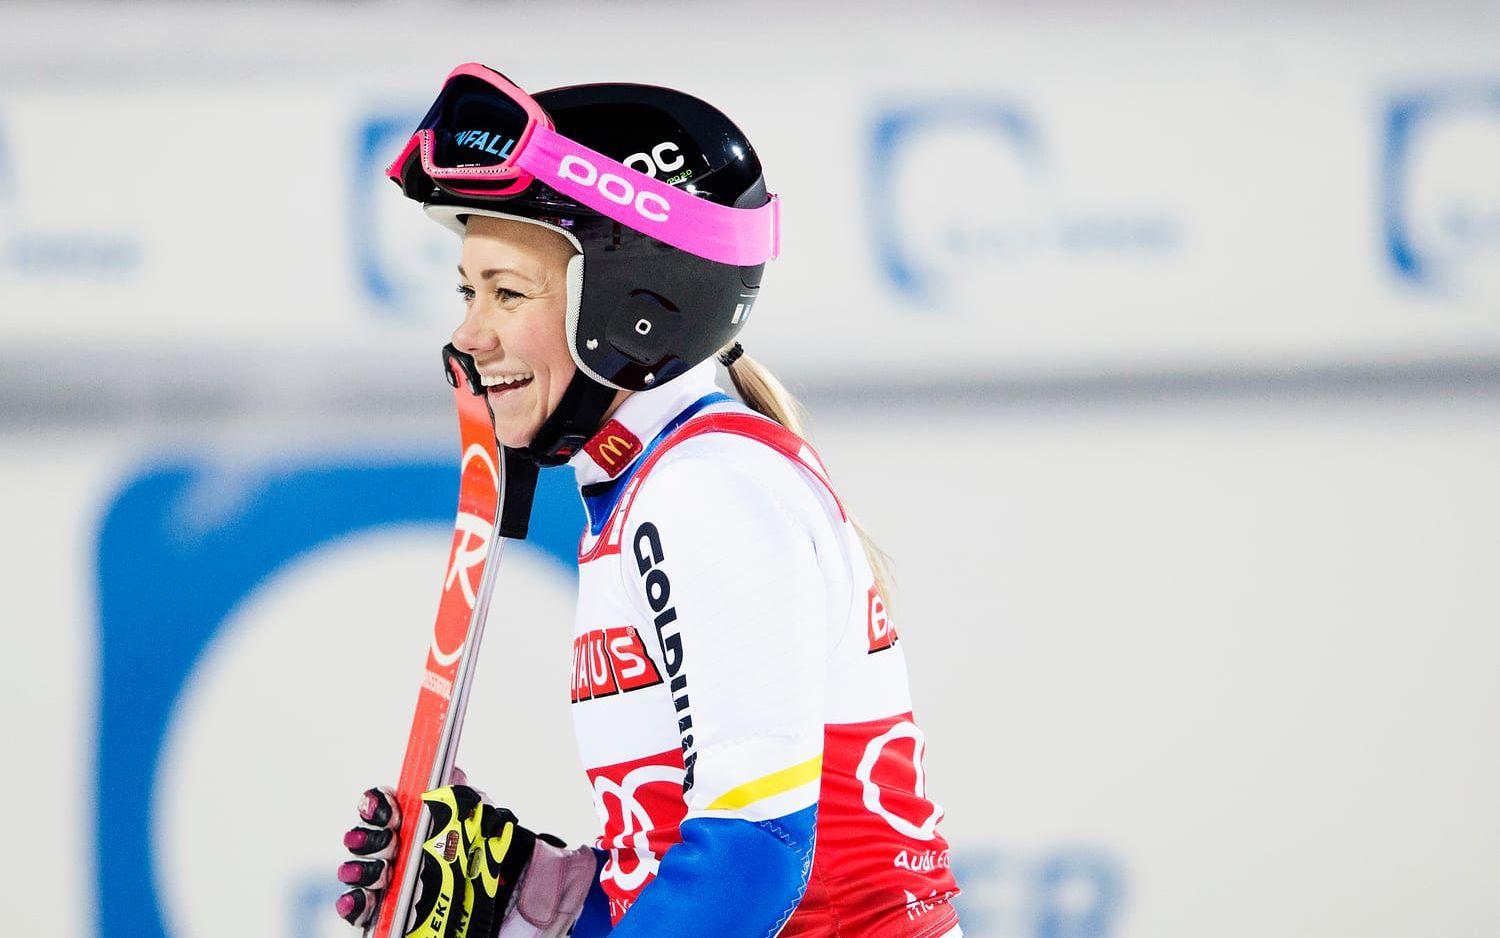 2016 kunde Frida Hansdotter titulera sig segrare i Slalomcupen ...